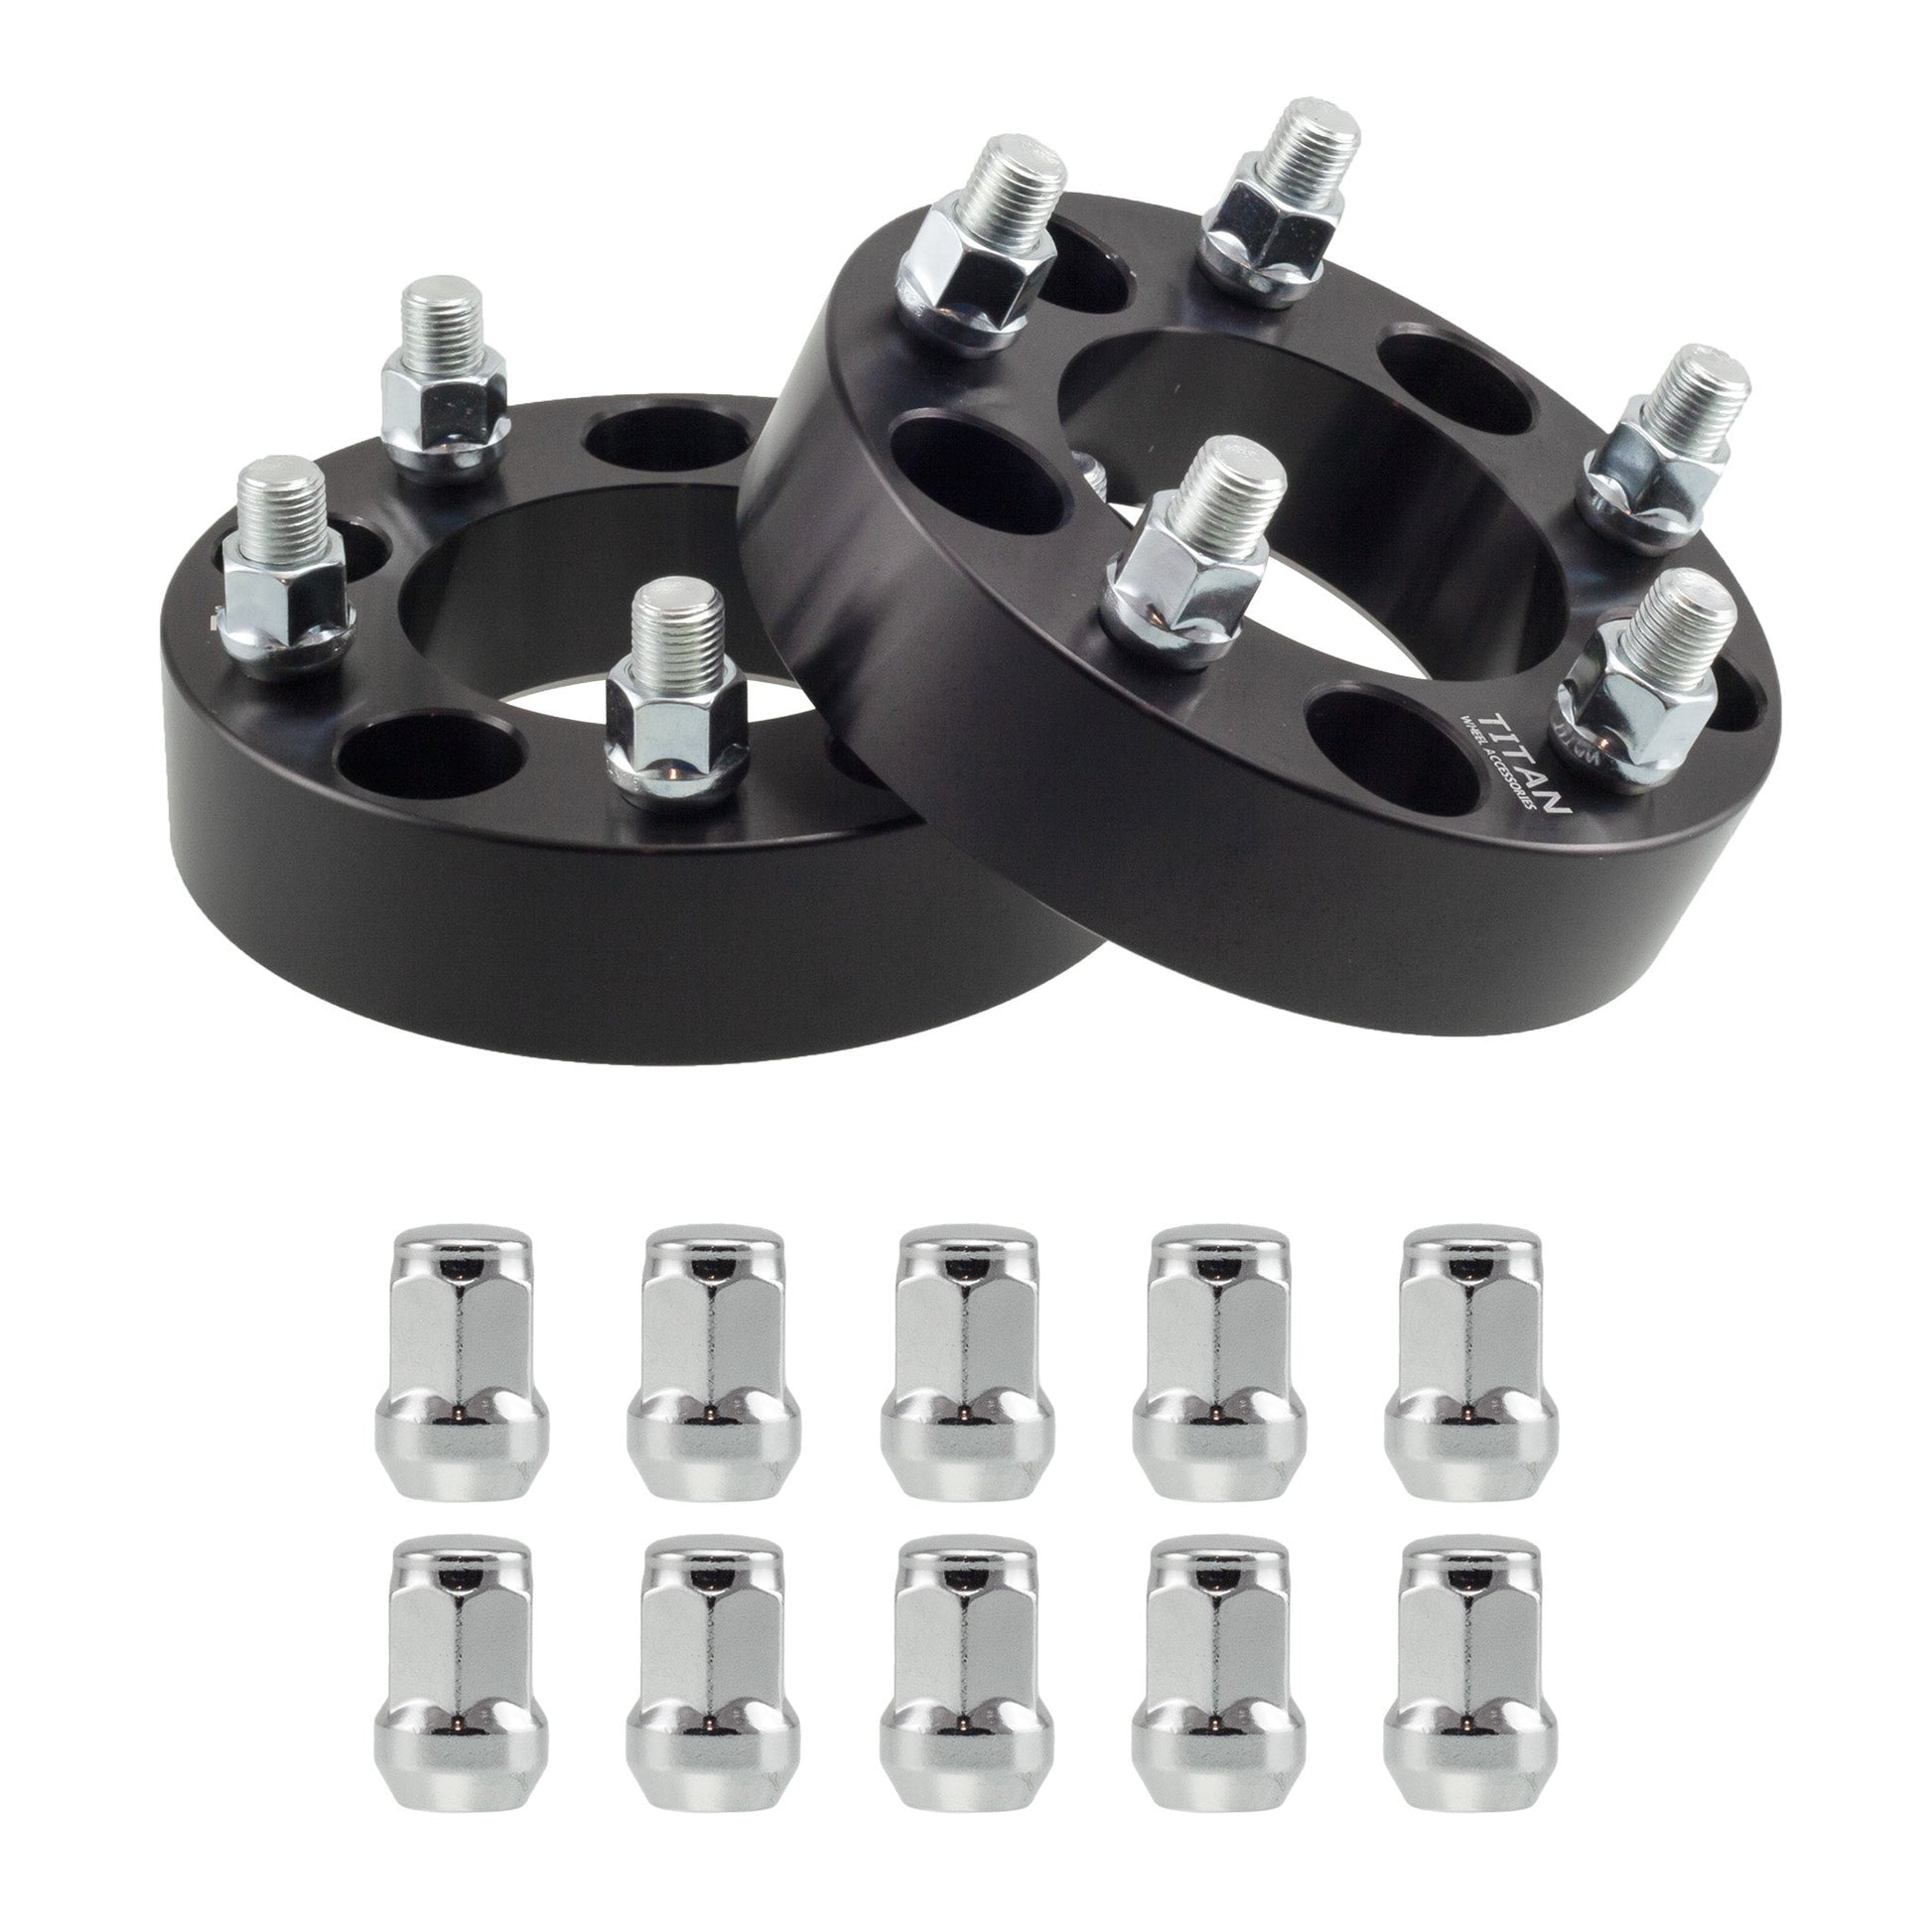 32mm (1.25") Titan Wheel Spacers for VW Golf Beetle Jetta Audi TT | 5x100 | 57.1 Hubcentric |12x1.5 Studs | Titan Wheel Accessories